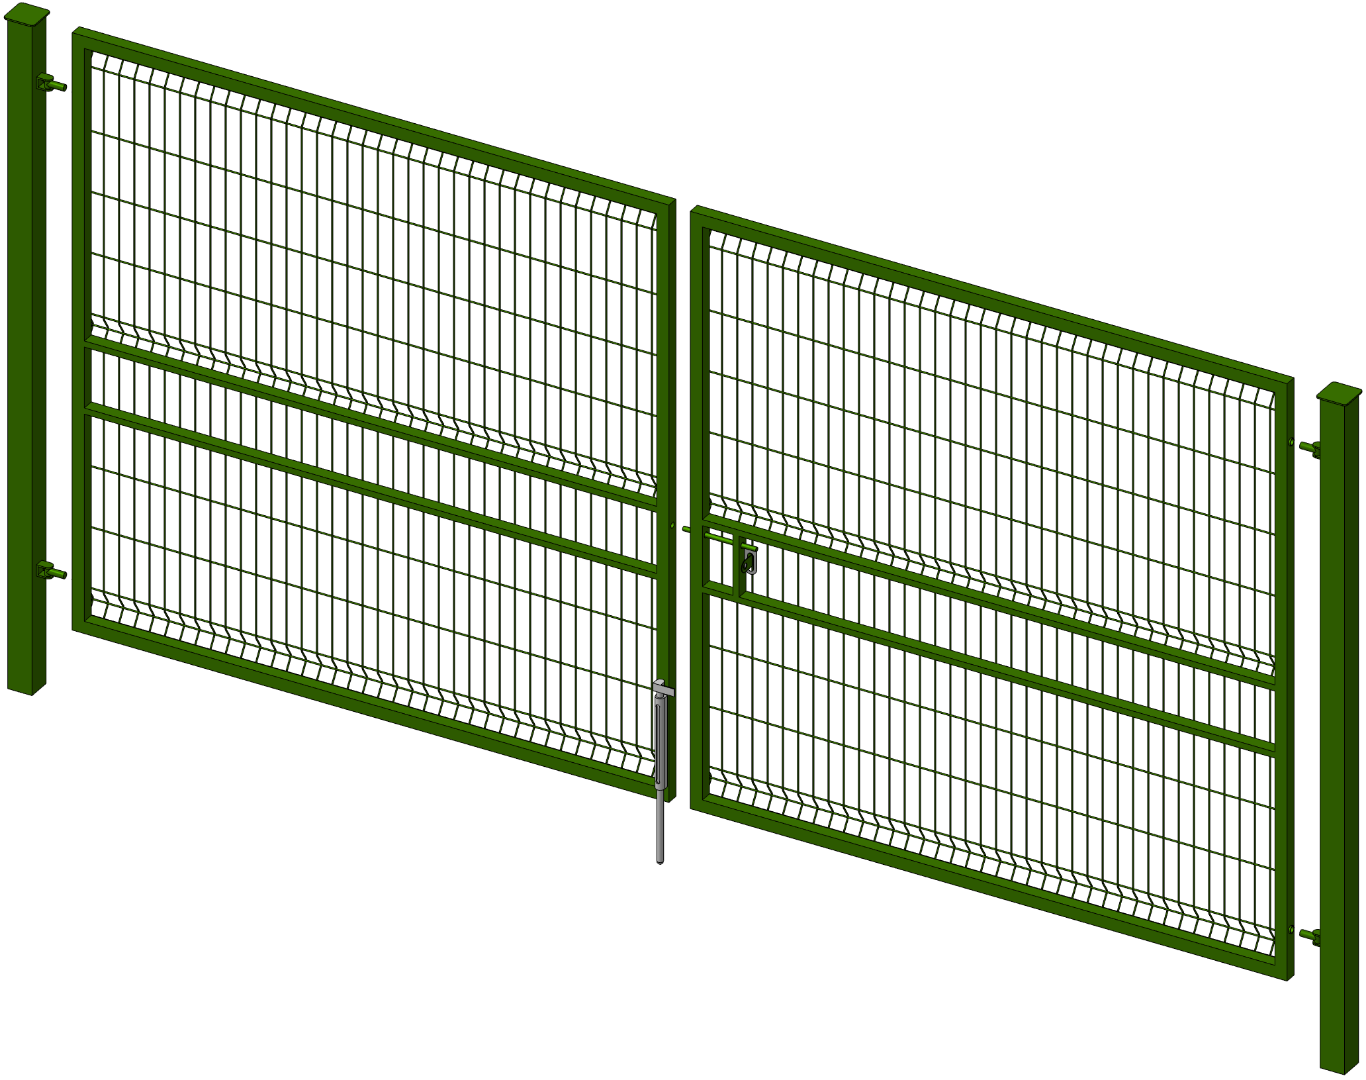 Ворота со сварной сеткой H 1,70м L 4,0м ППК RAL 6005 — ☎ 8(812)984-04-27